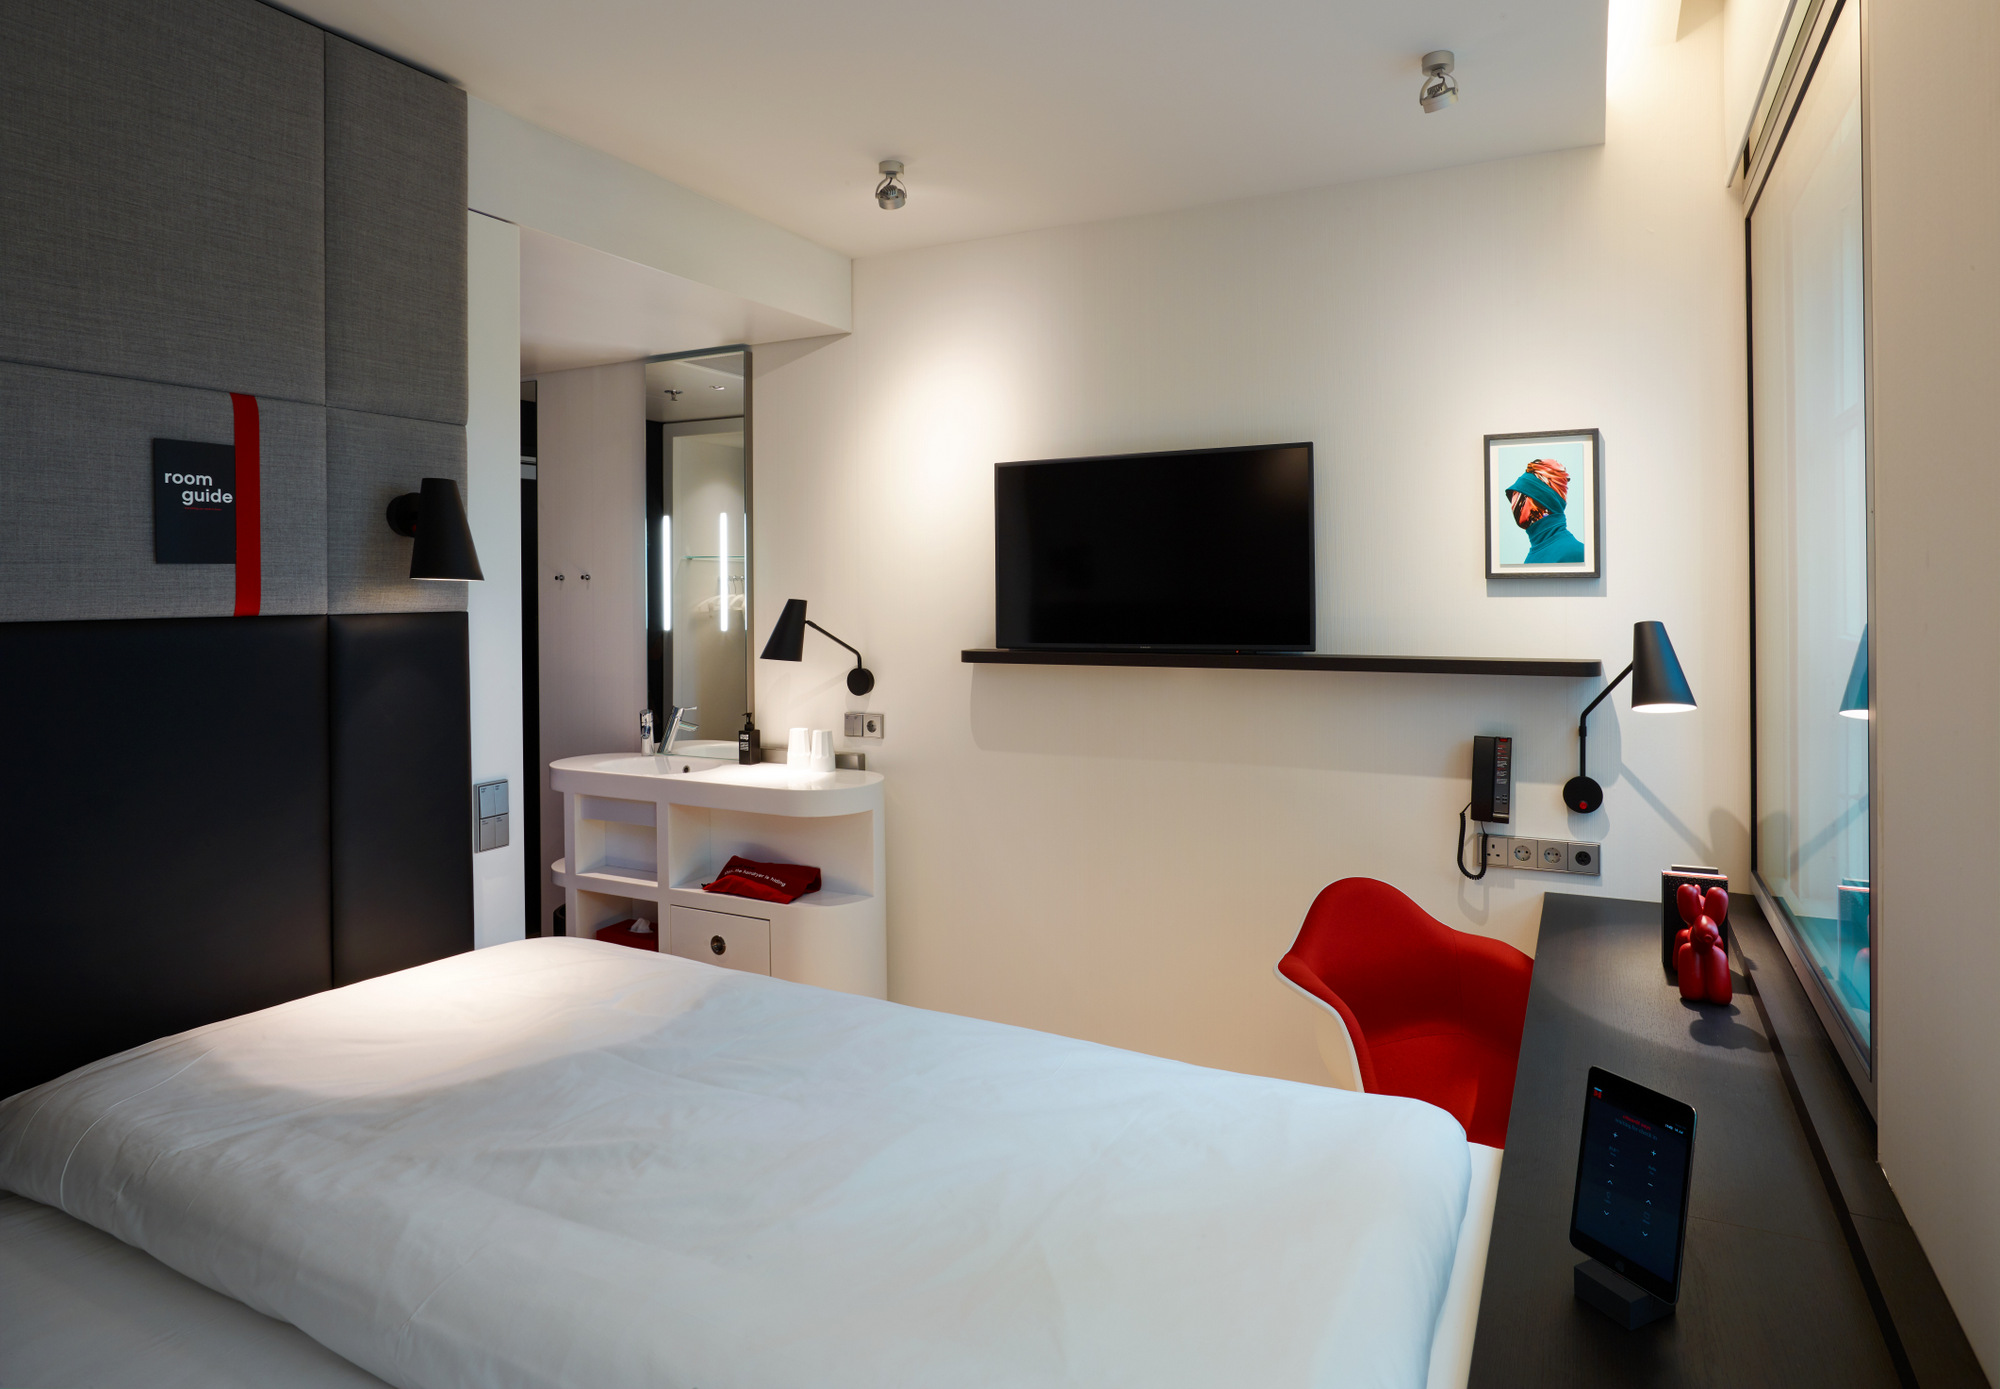 图片[13]|citizenM Amstel酒店|ART-Arrakis | 建筑室内设计的创新与灵感